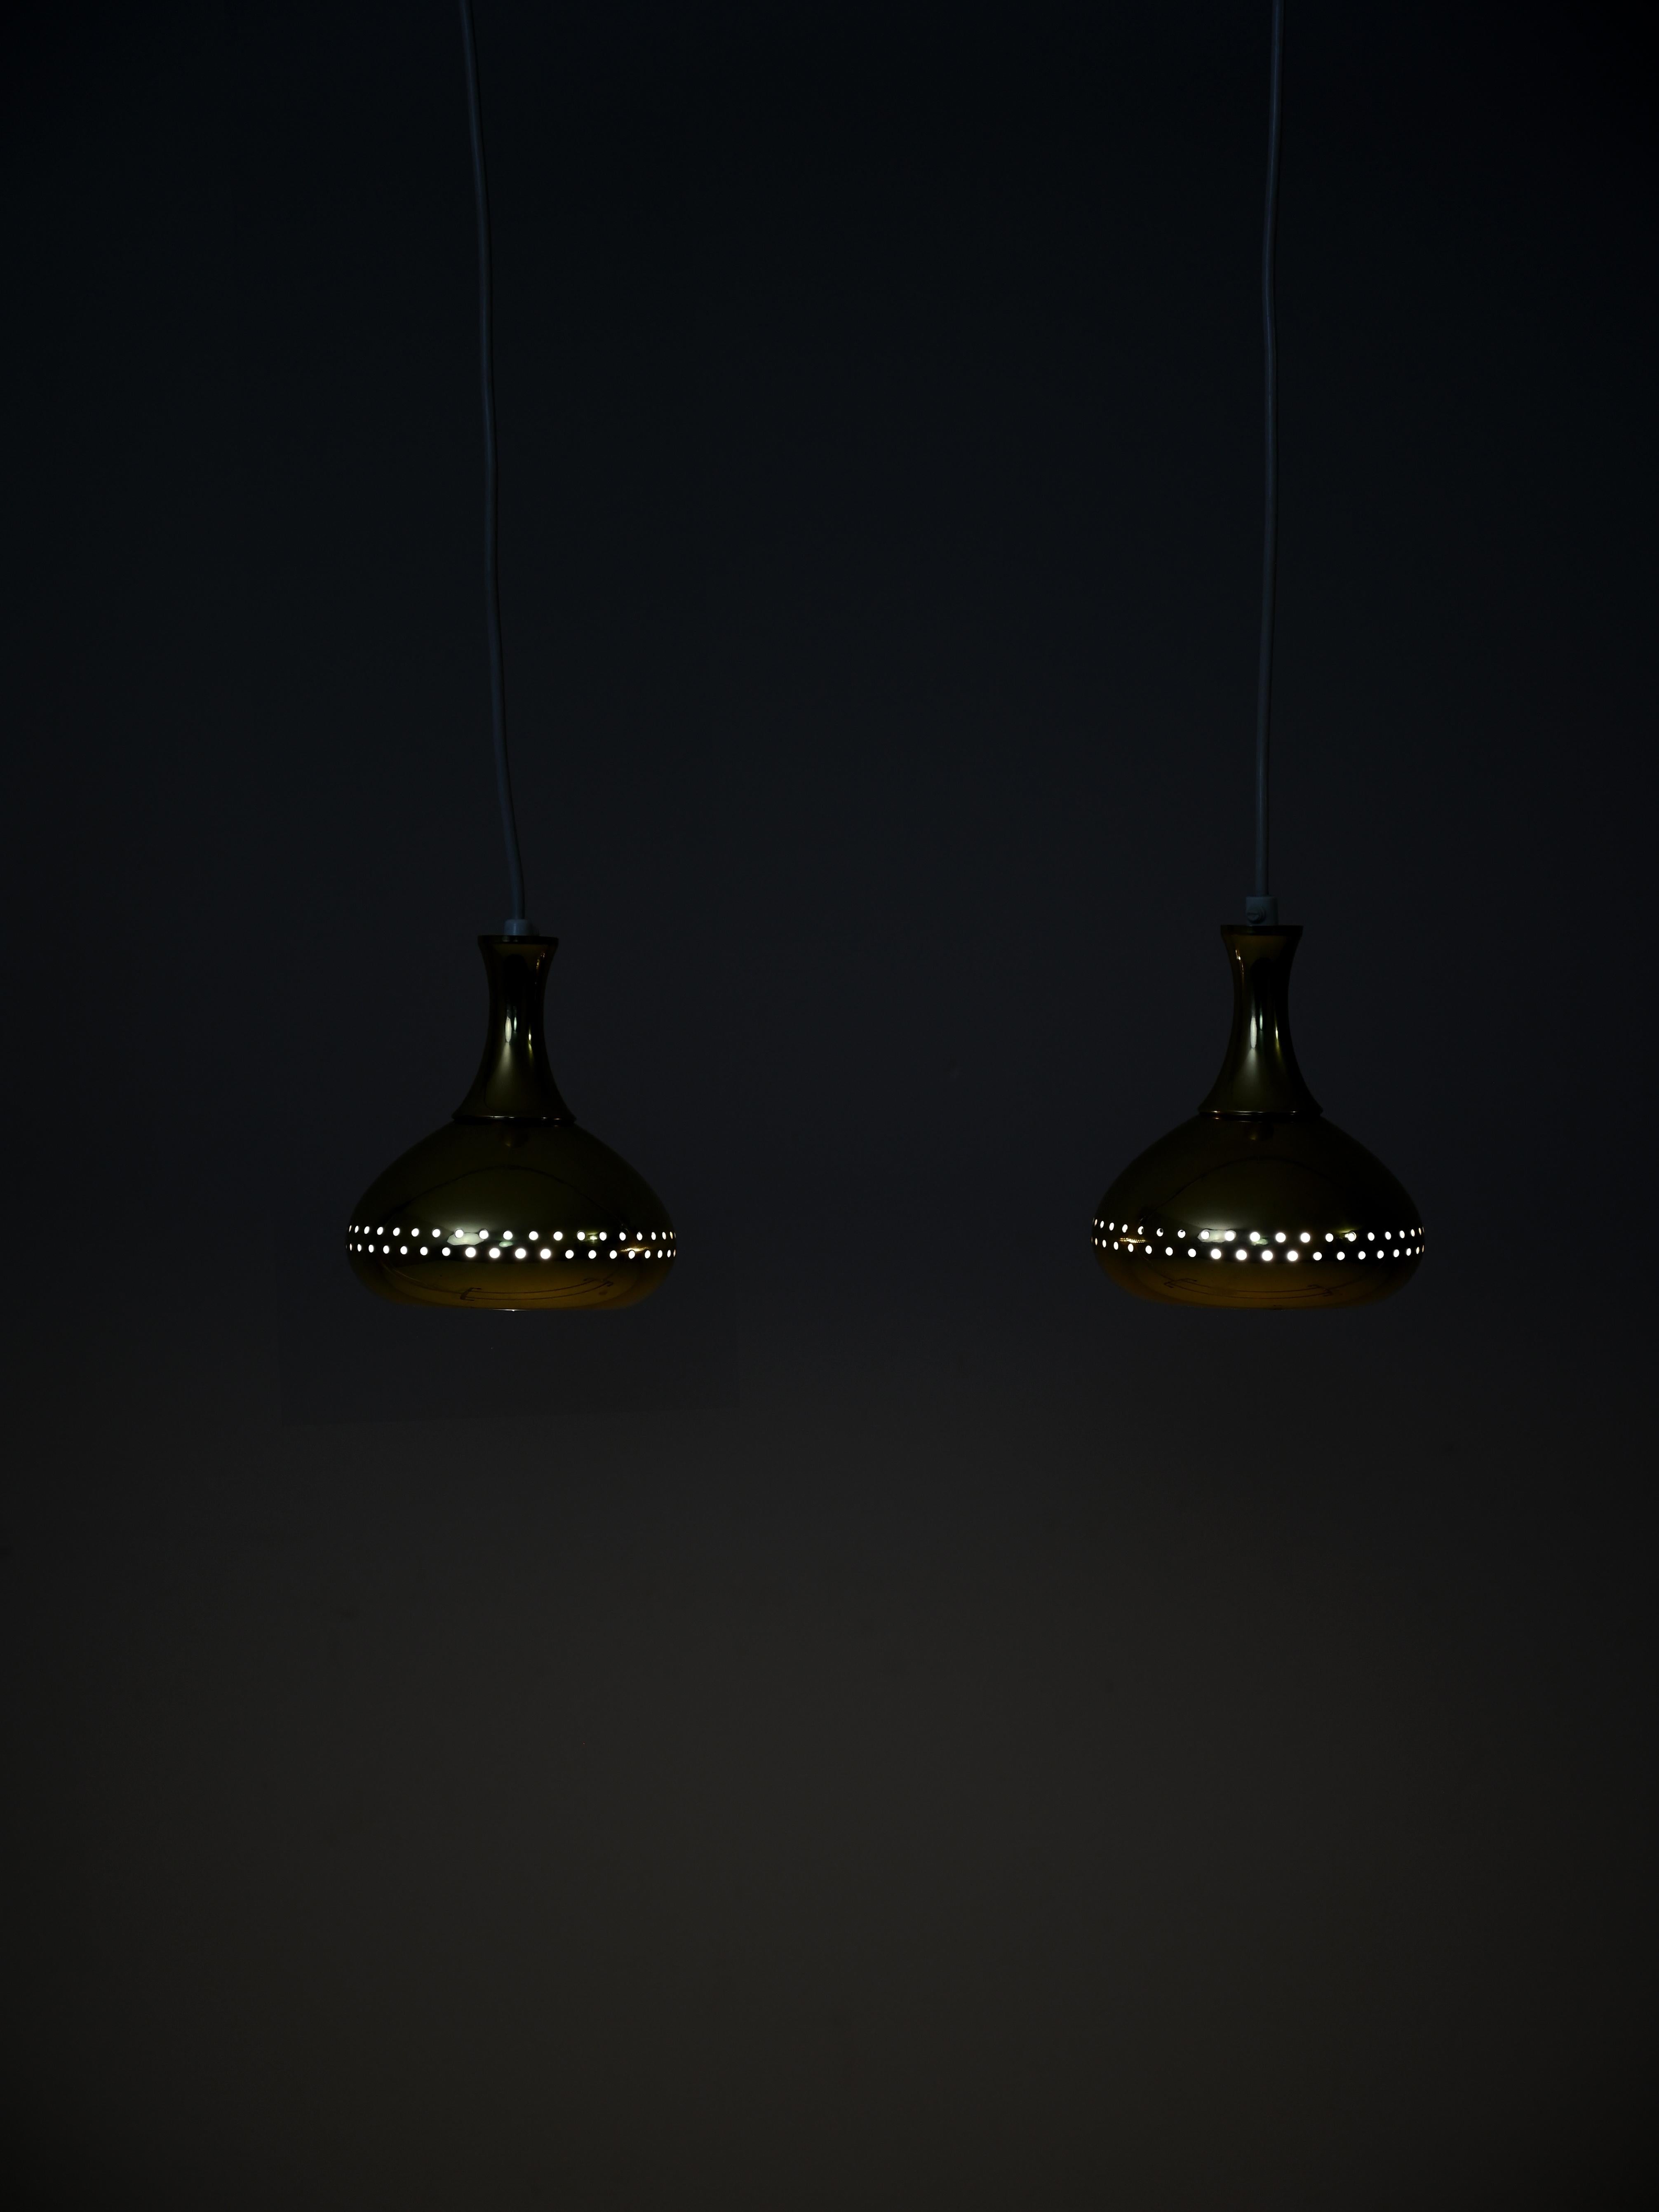 Lampes suspendues conçues par le designer suédois Hans-Agne Jakobsson pour la société Markaryd dans les années 1950.

Les pendentifs en laiton perforé présentent des courbes simples et des jeux d'ombre et de lumière sur les murs.

La hauteur est